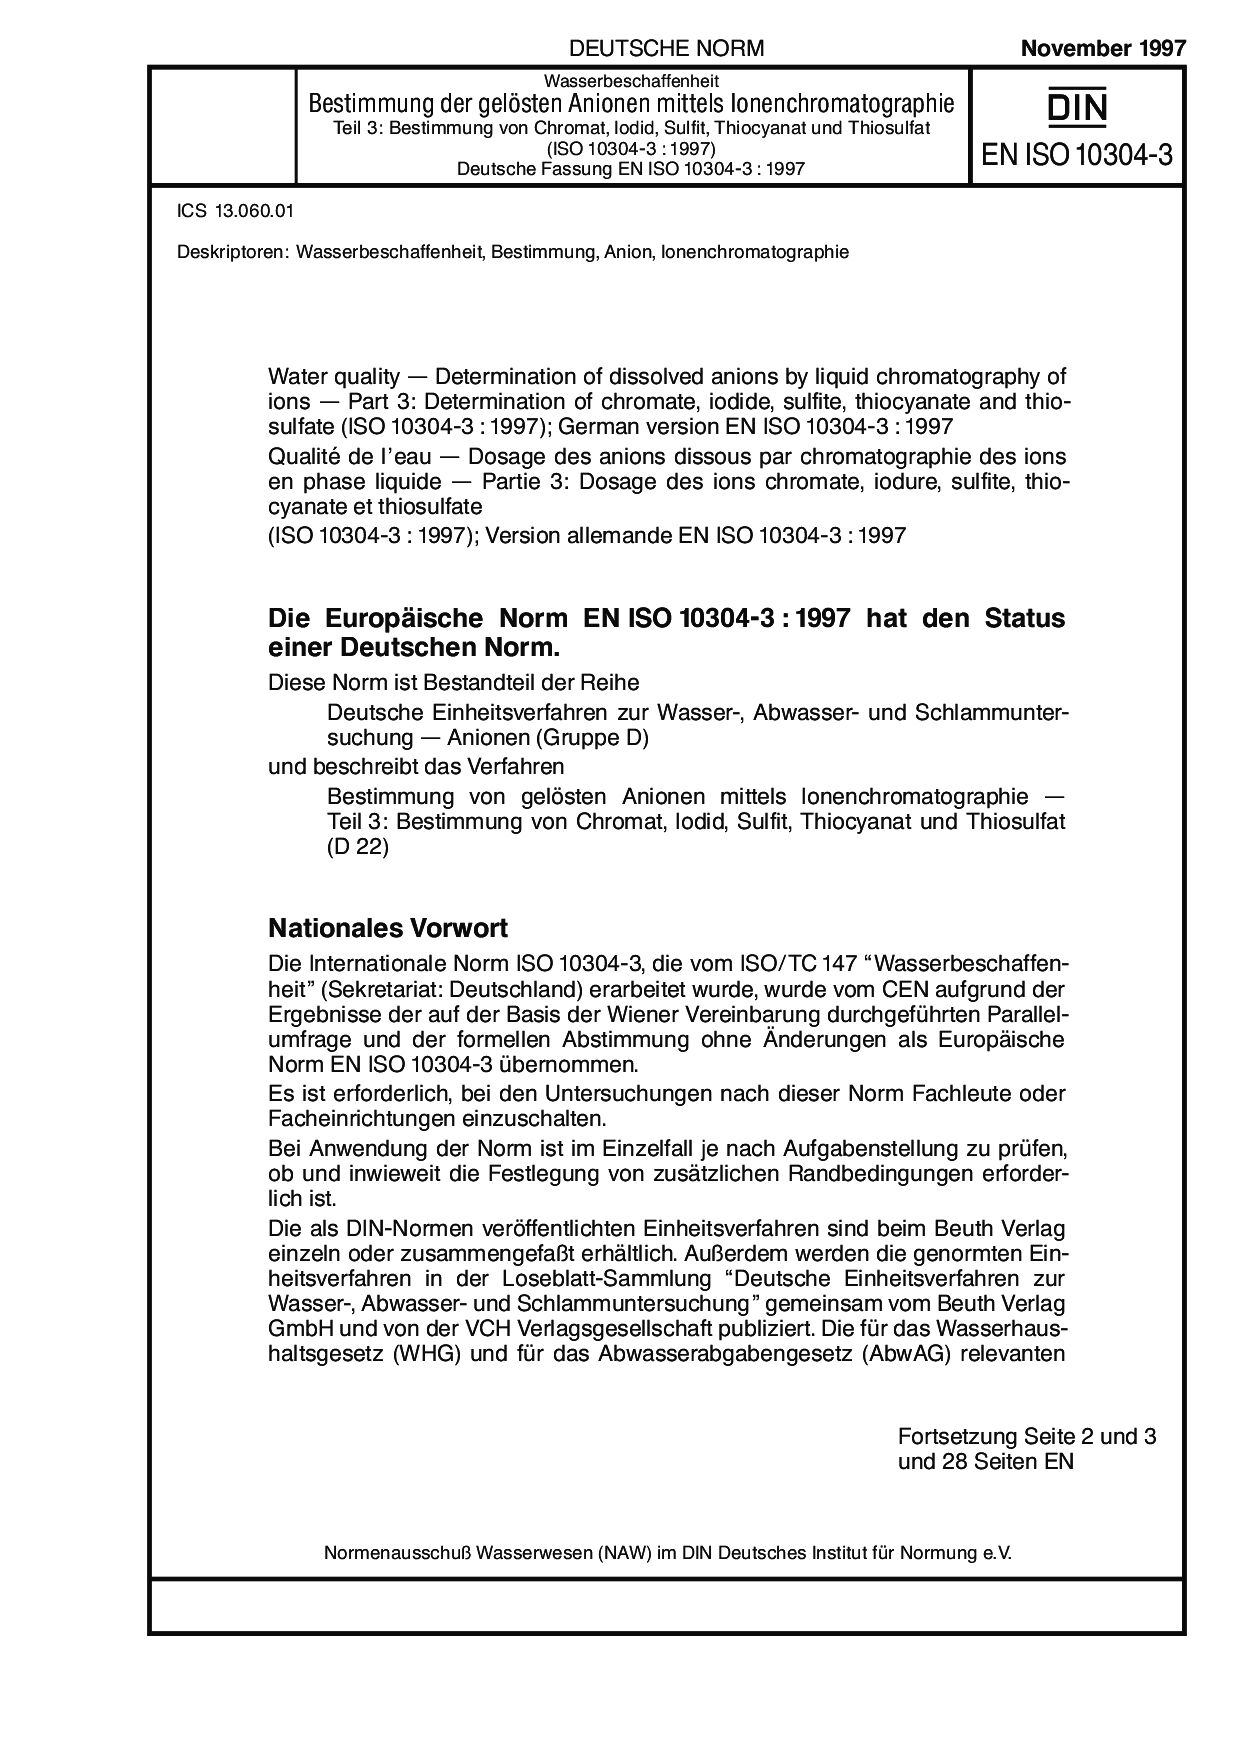 DIN EN ISO 10304-3:1997封面图